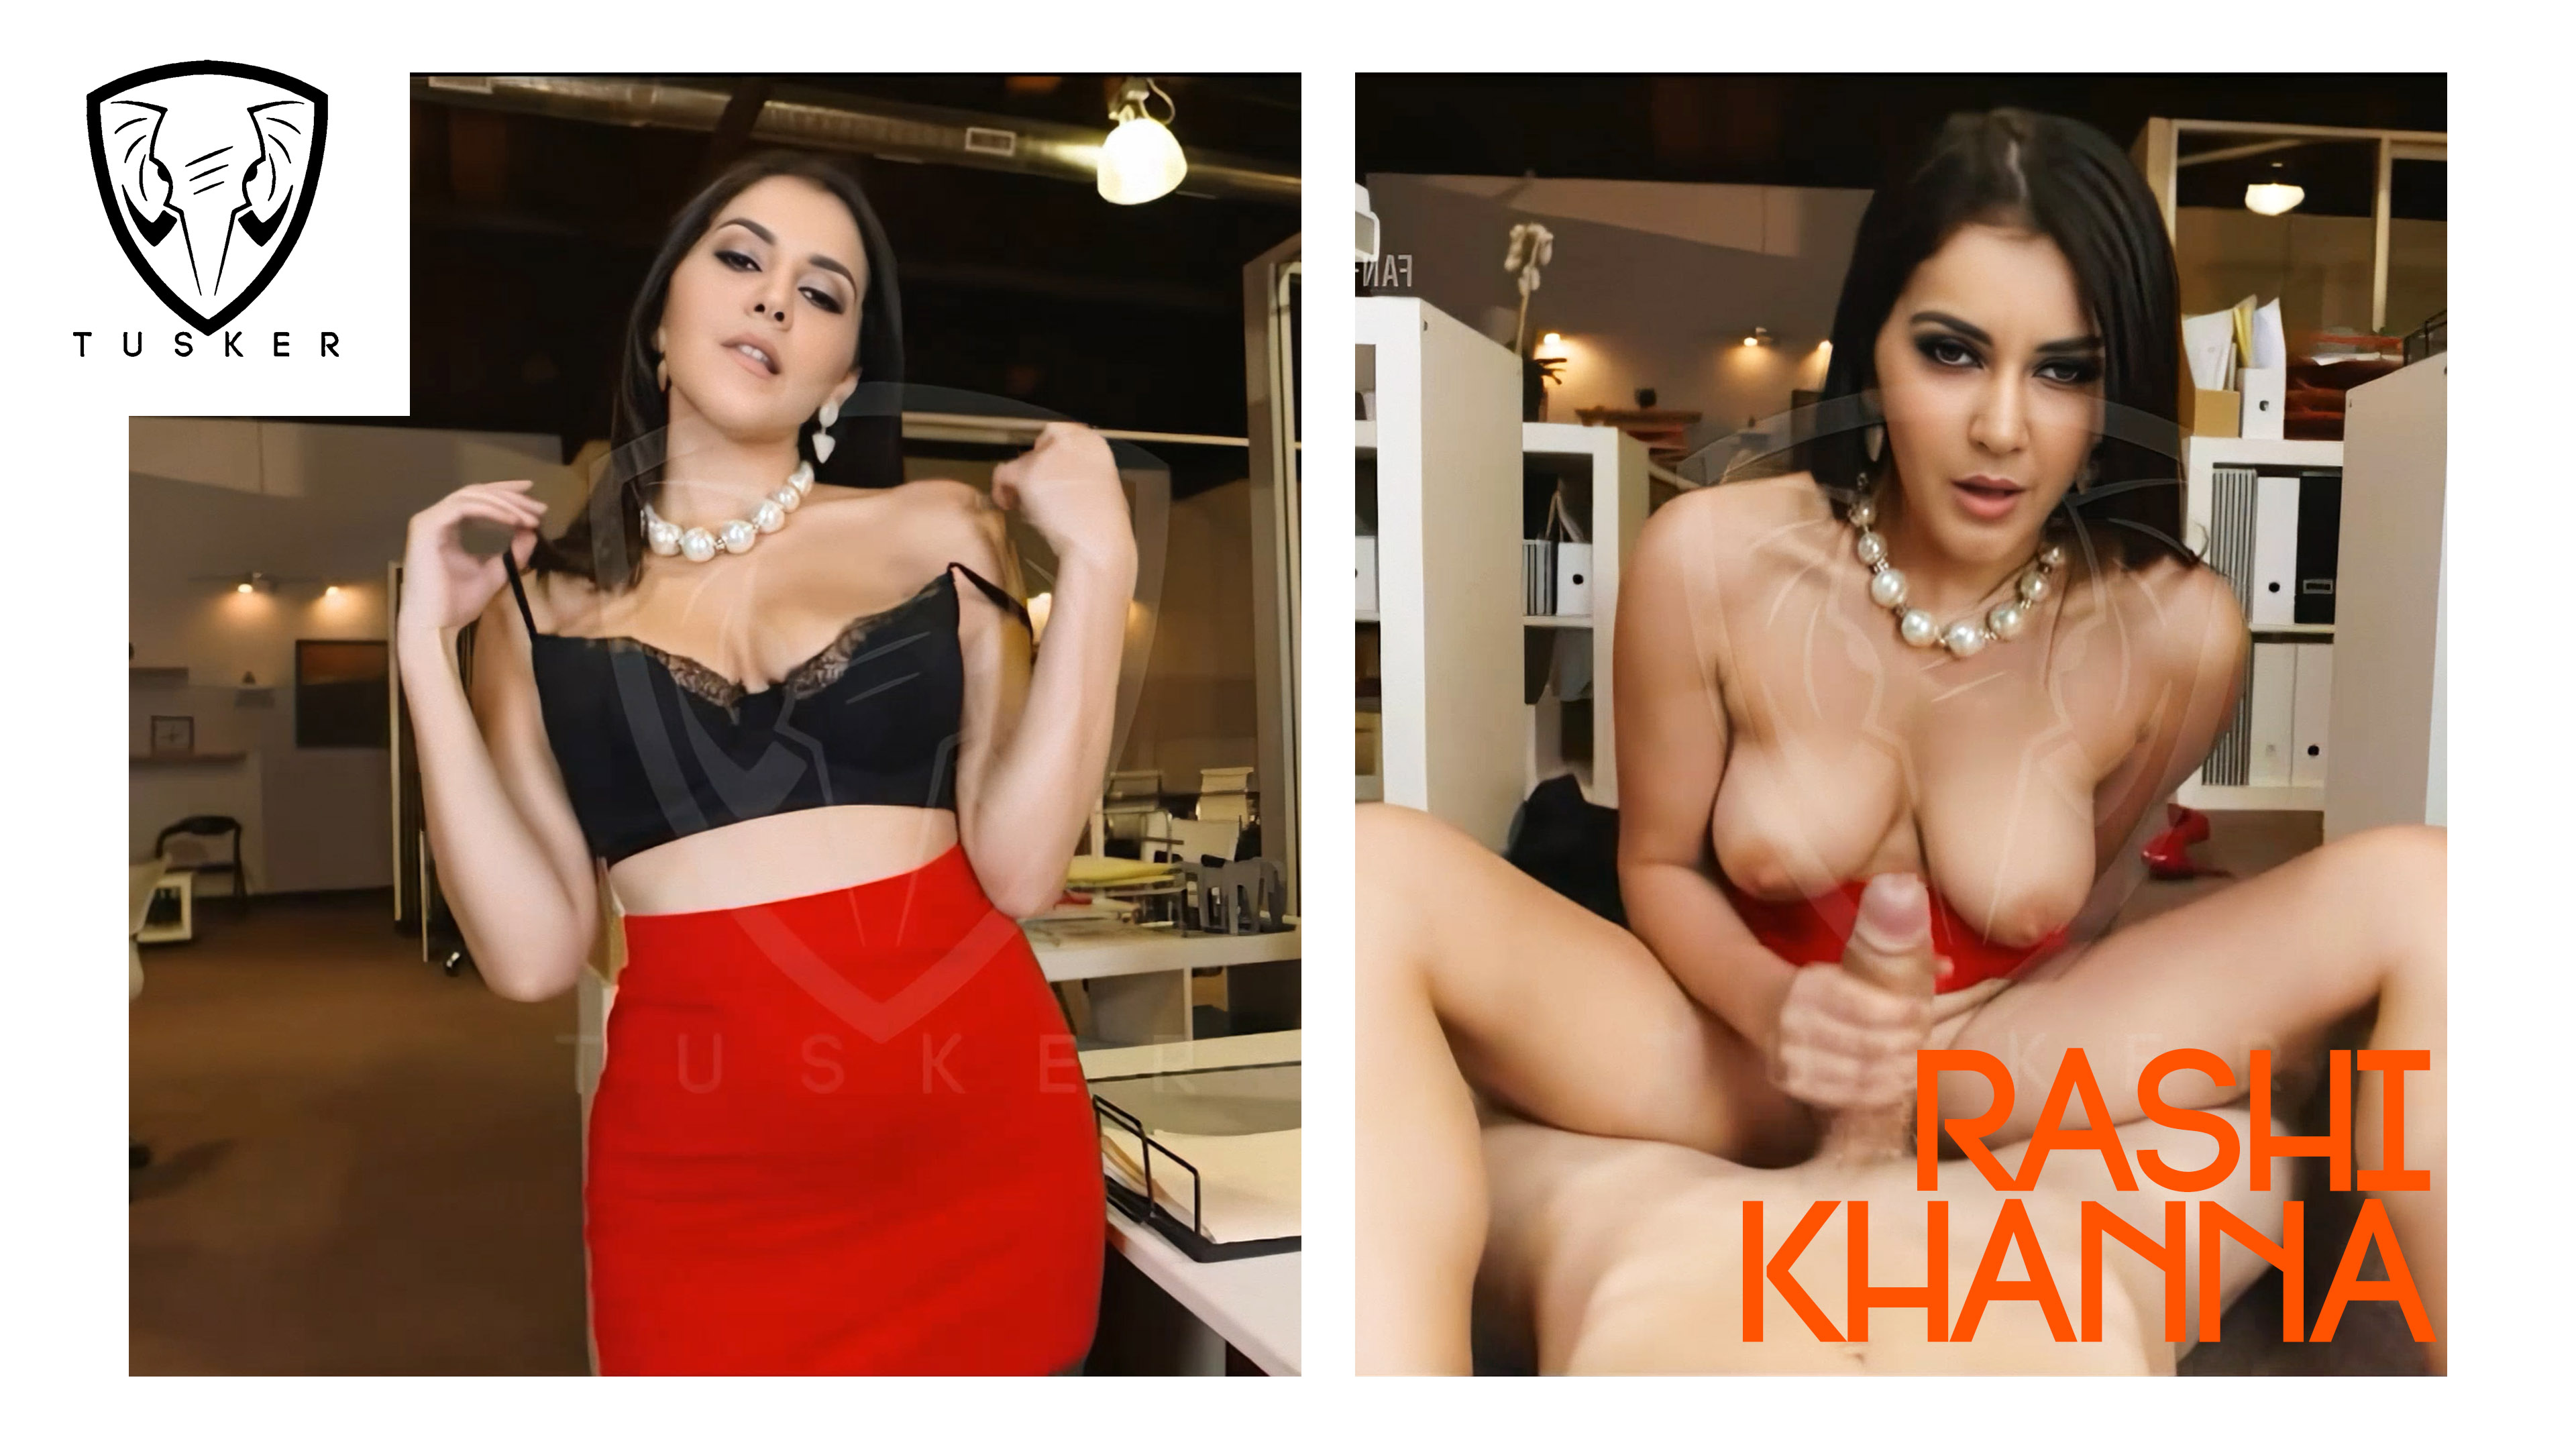 3840px x 2160px - Rashi Khanna's Secretary Duties - [ TUSKER FREE VIDEO ] DeepFake Porn -  MrDeepFakes